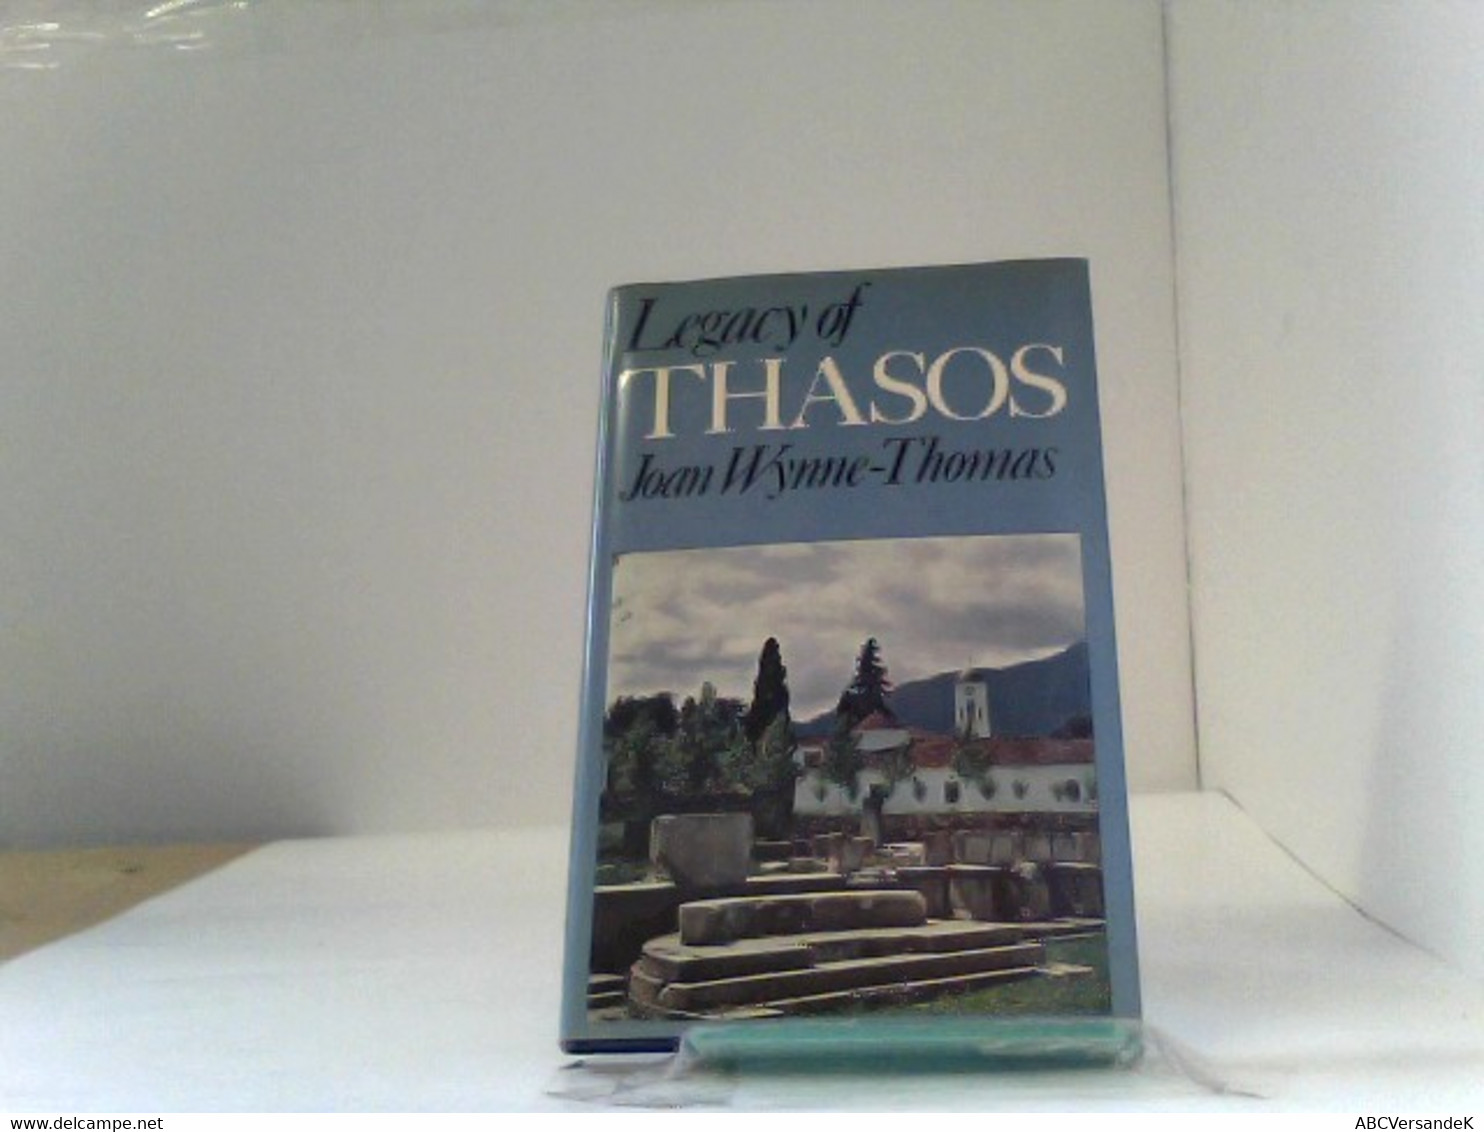 Legacy Of Thasos - Archeologia